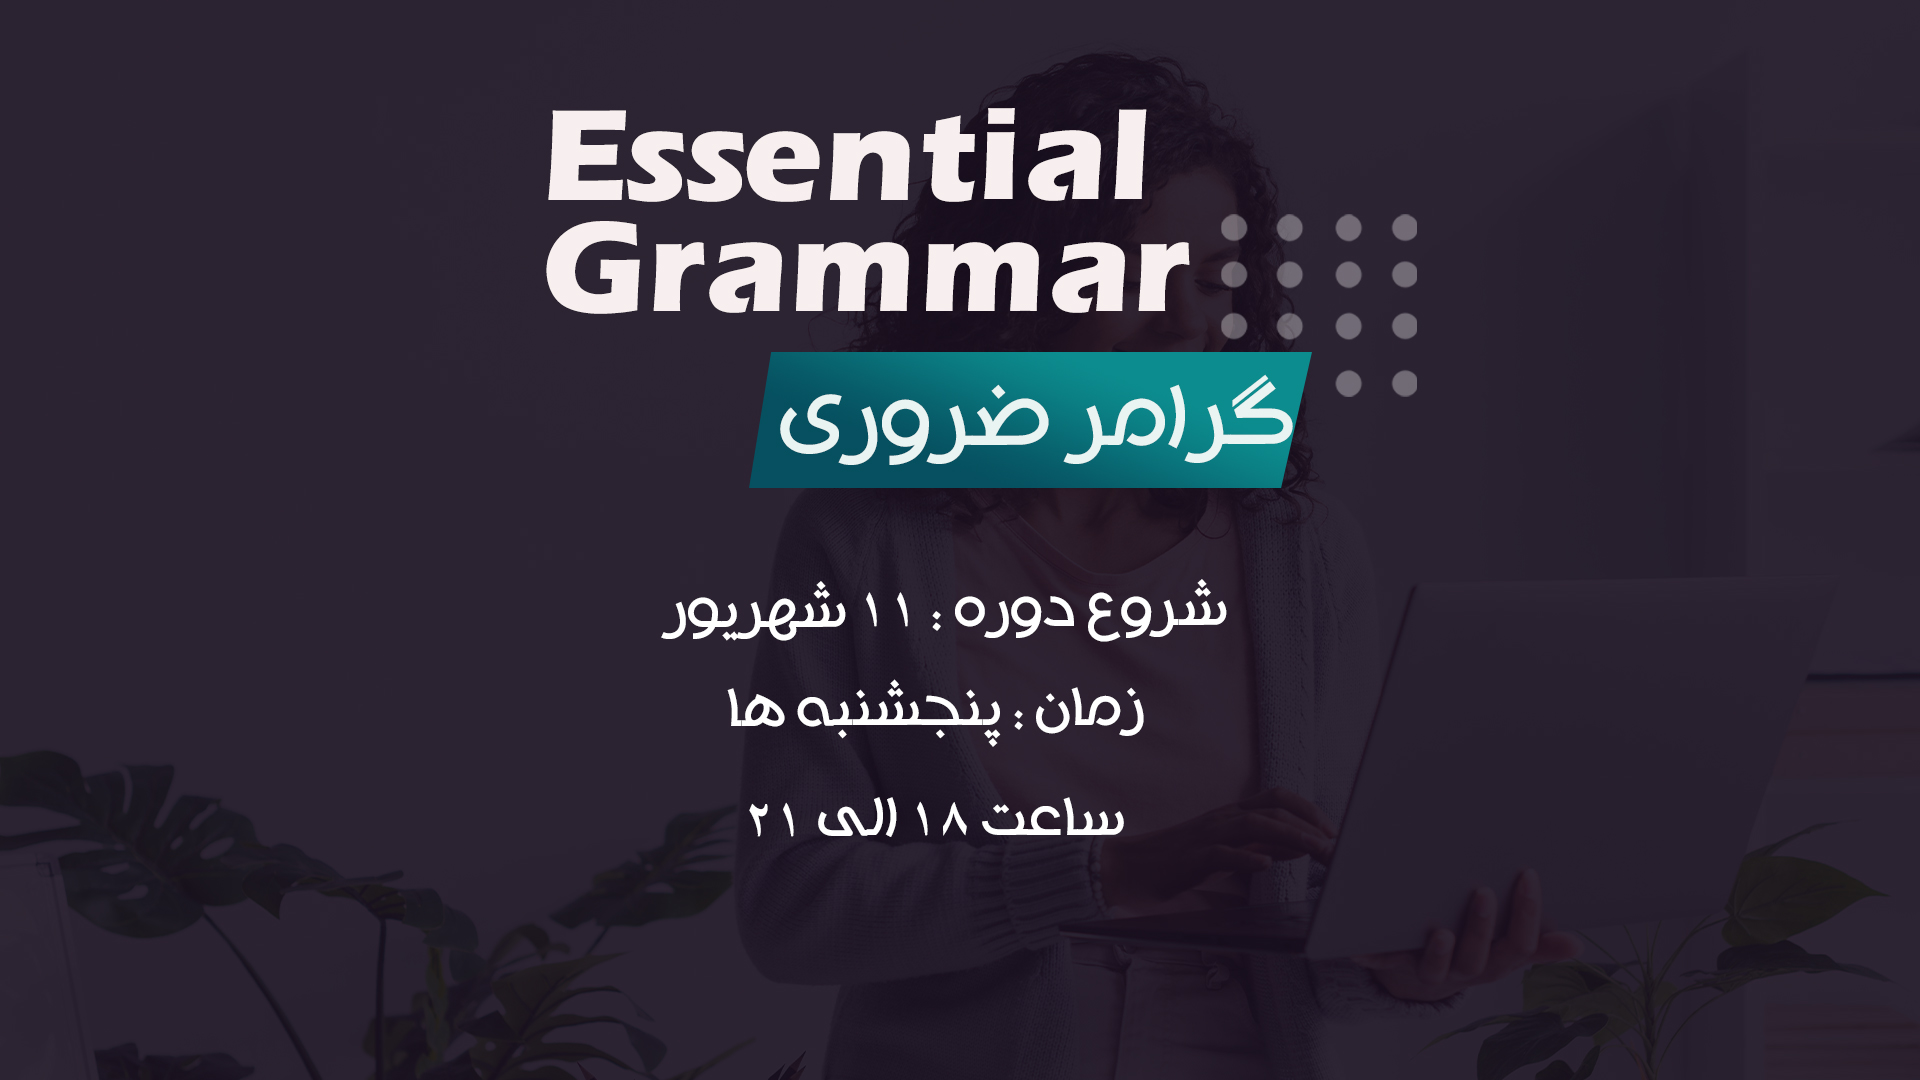 Essential Grammar 44 (Poster)